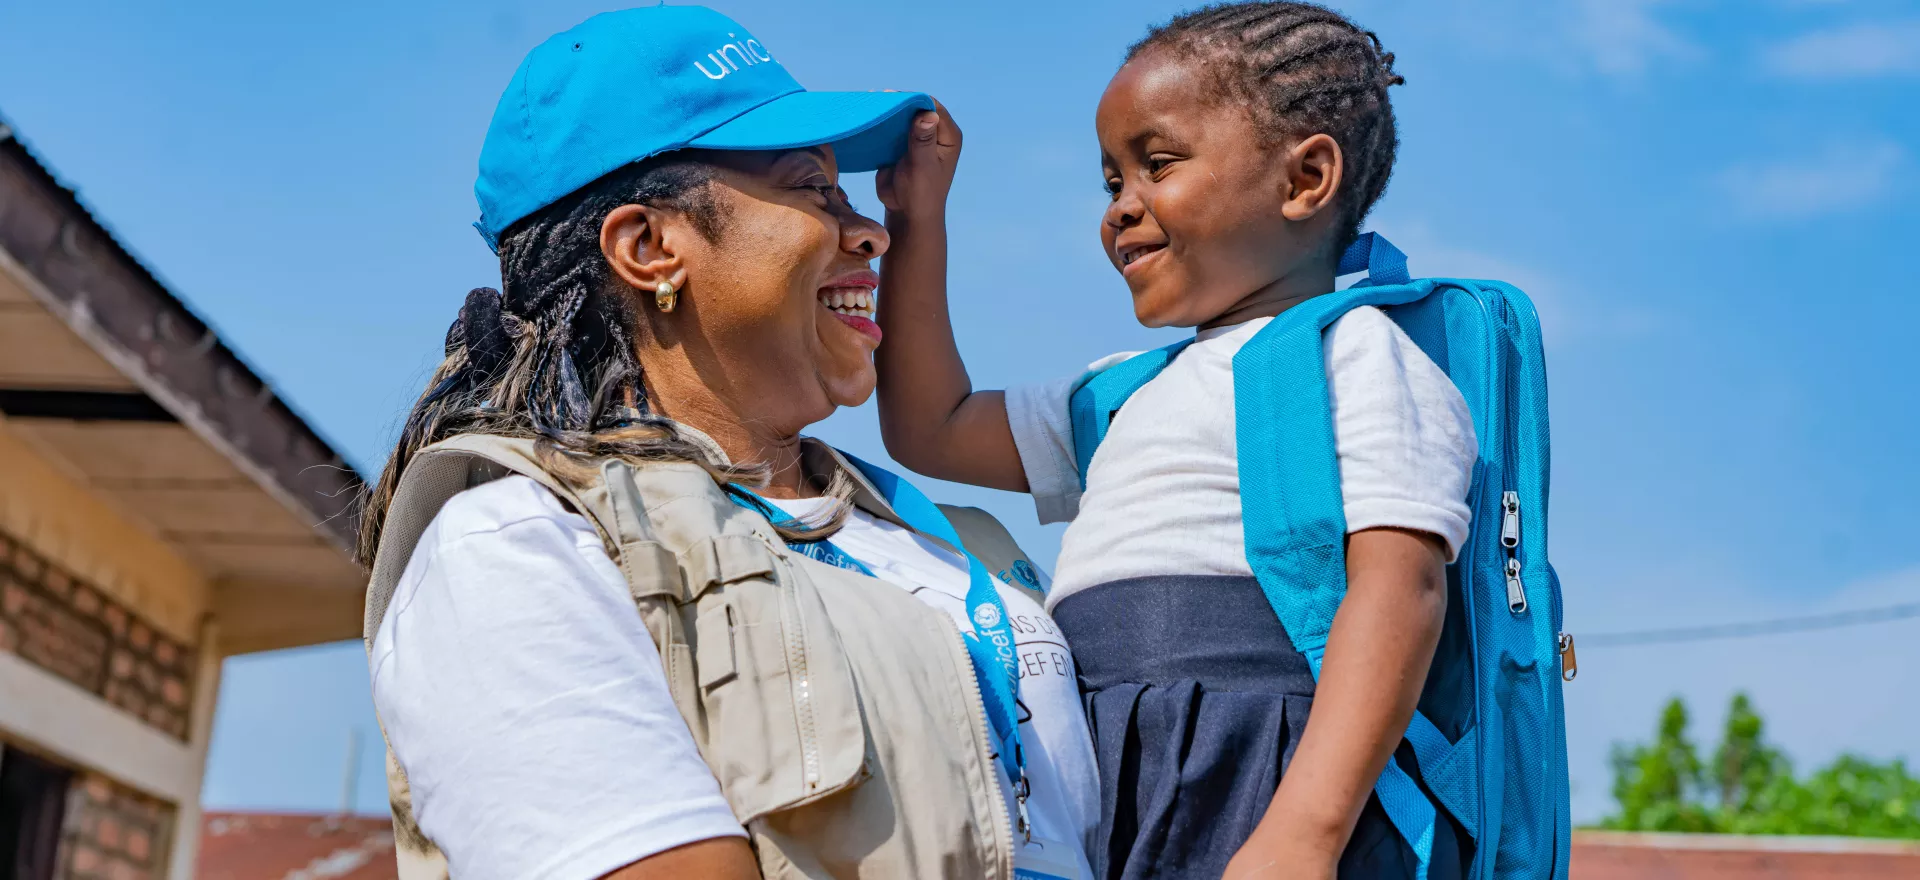 一位联合国儿童基金会的员工抱着一个刚收到书包的小孩